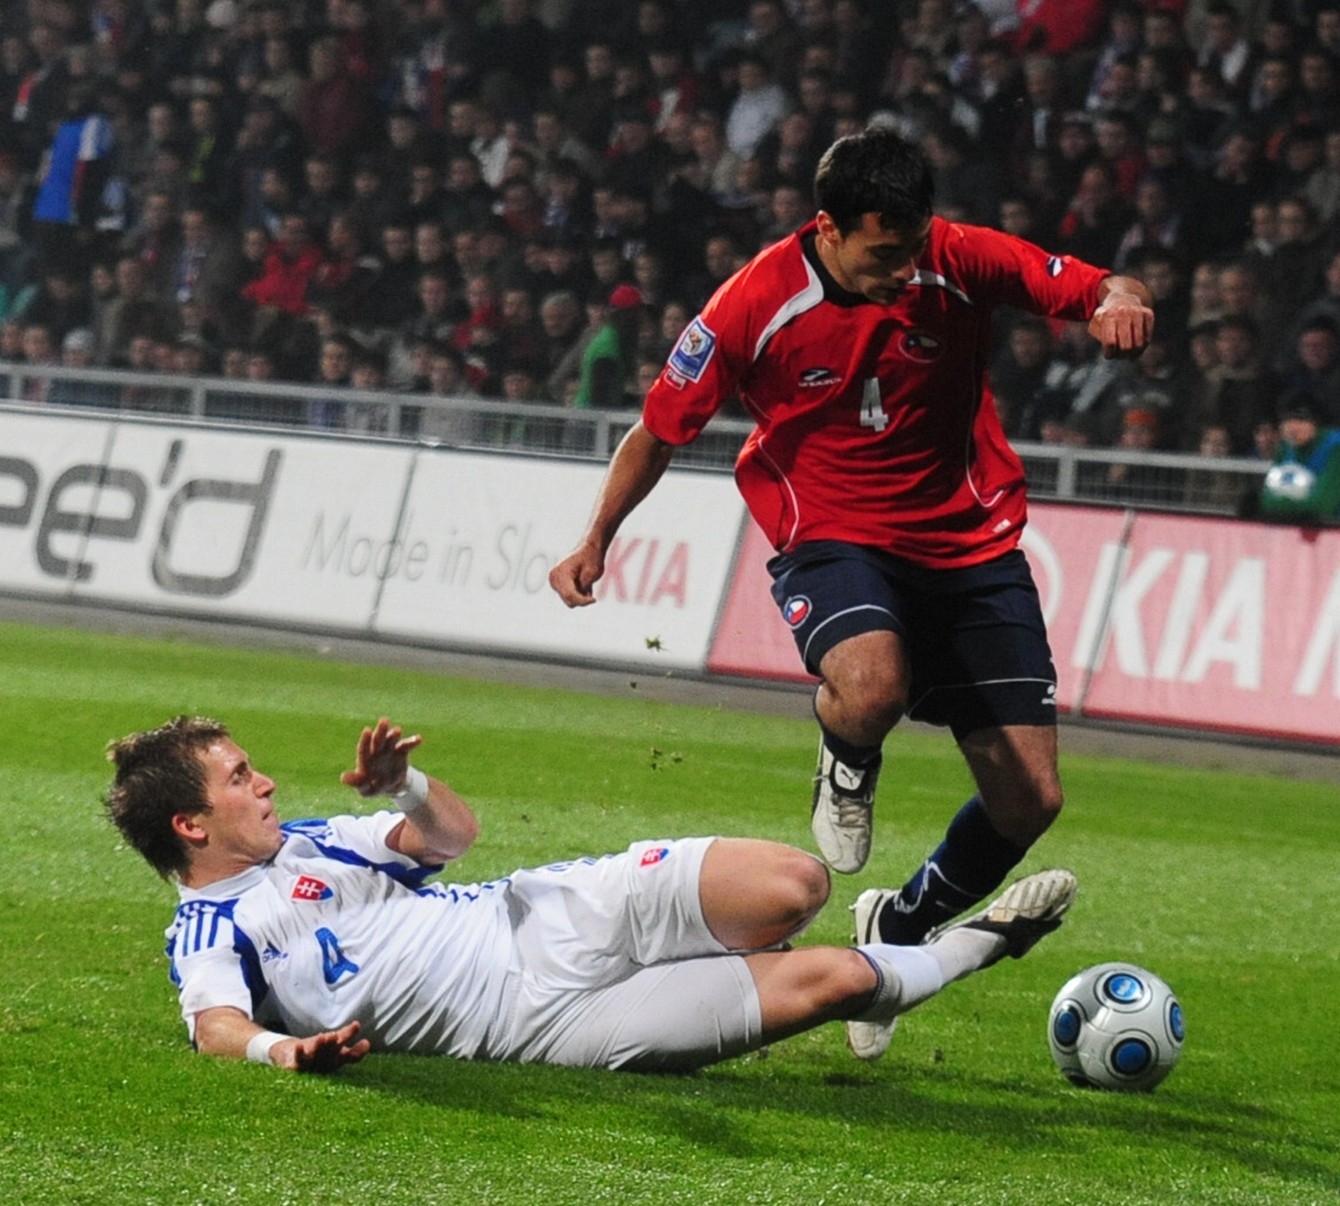 Peter Pekarík (na zemi) a Roberto Cereceda v prípravnom zápase Slovensko - Čile 1:2 (Žilina, 17.11.2009). 